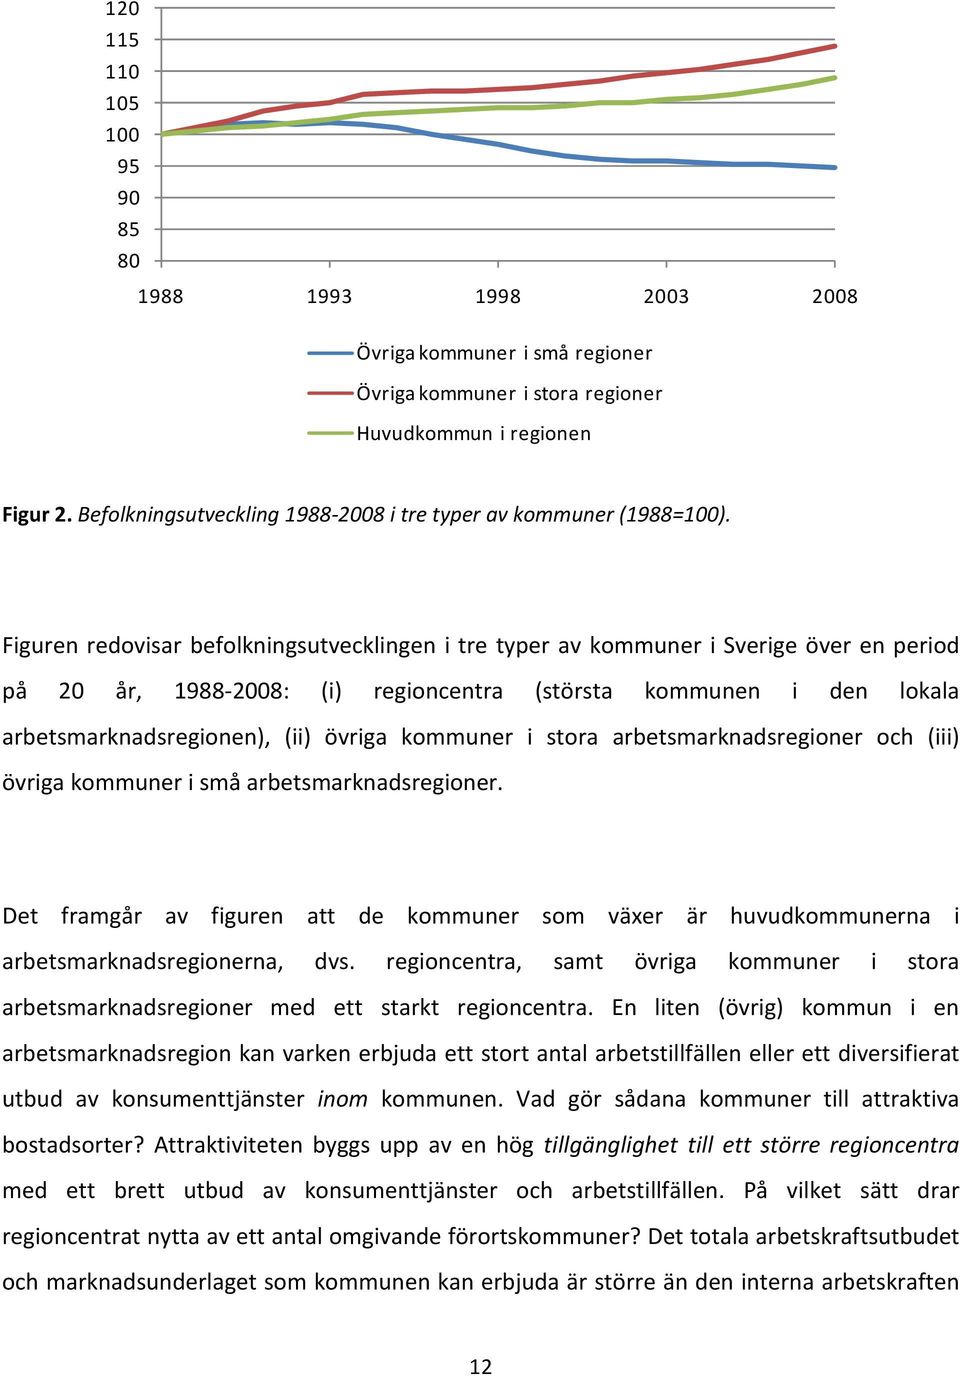 Figuren redovisar befolkningsutvecklingen i tre typer av kommuner i Sverige över en period på 20 år, 1988-2008: (i) regioncentra (största kommunen i den lokala arbetsmarknadsregionen), (ii) övriga